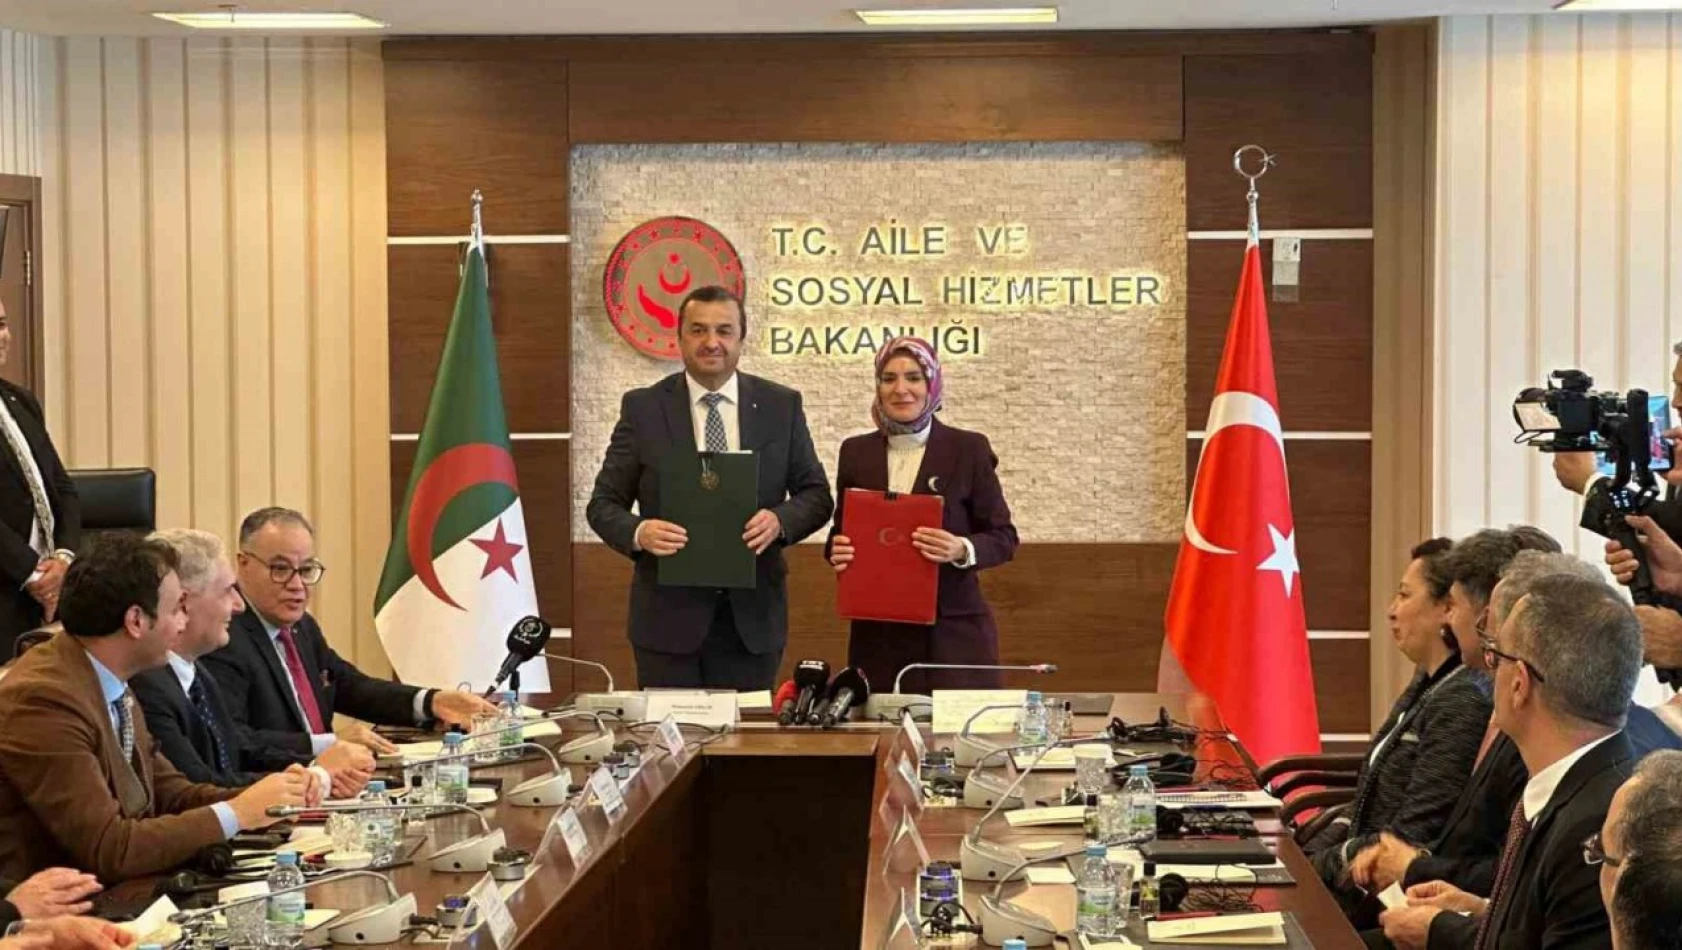 Türkiye-Cezayir KEK 12. Dönem Toplantısı'nın kapanış oturumu Ankara'da gerçekleştirildi